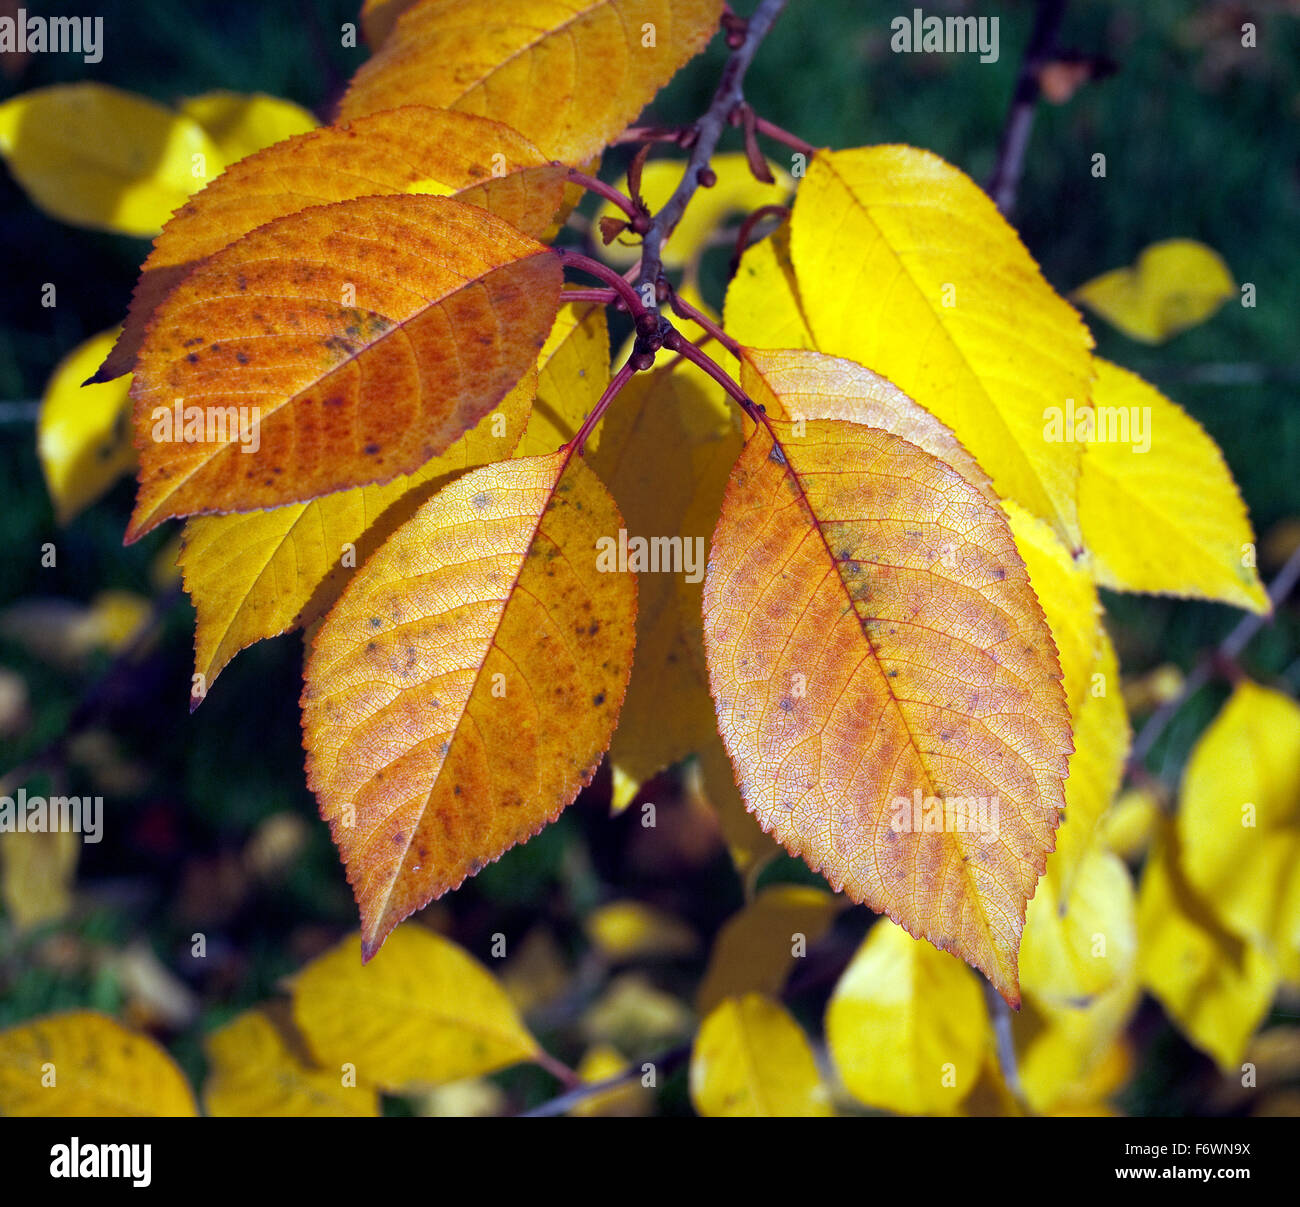 Herbstimpression, Kirschbaum, kirsche, Herbst Stock Photo